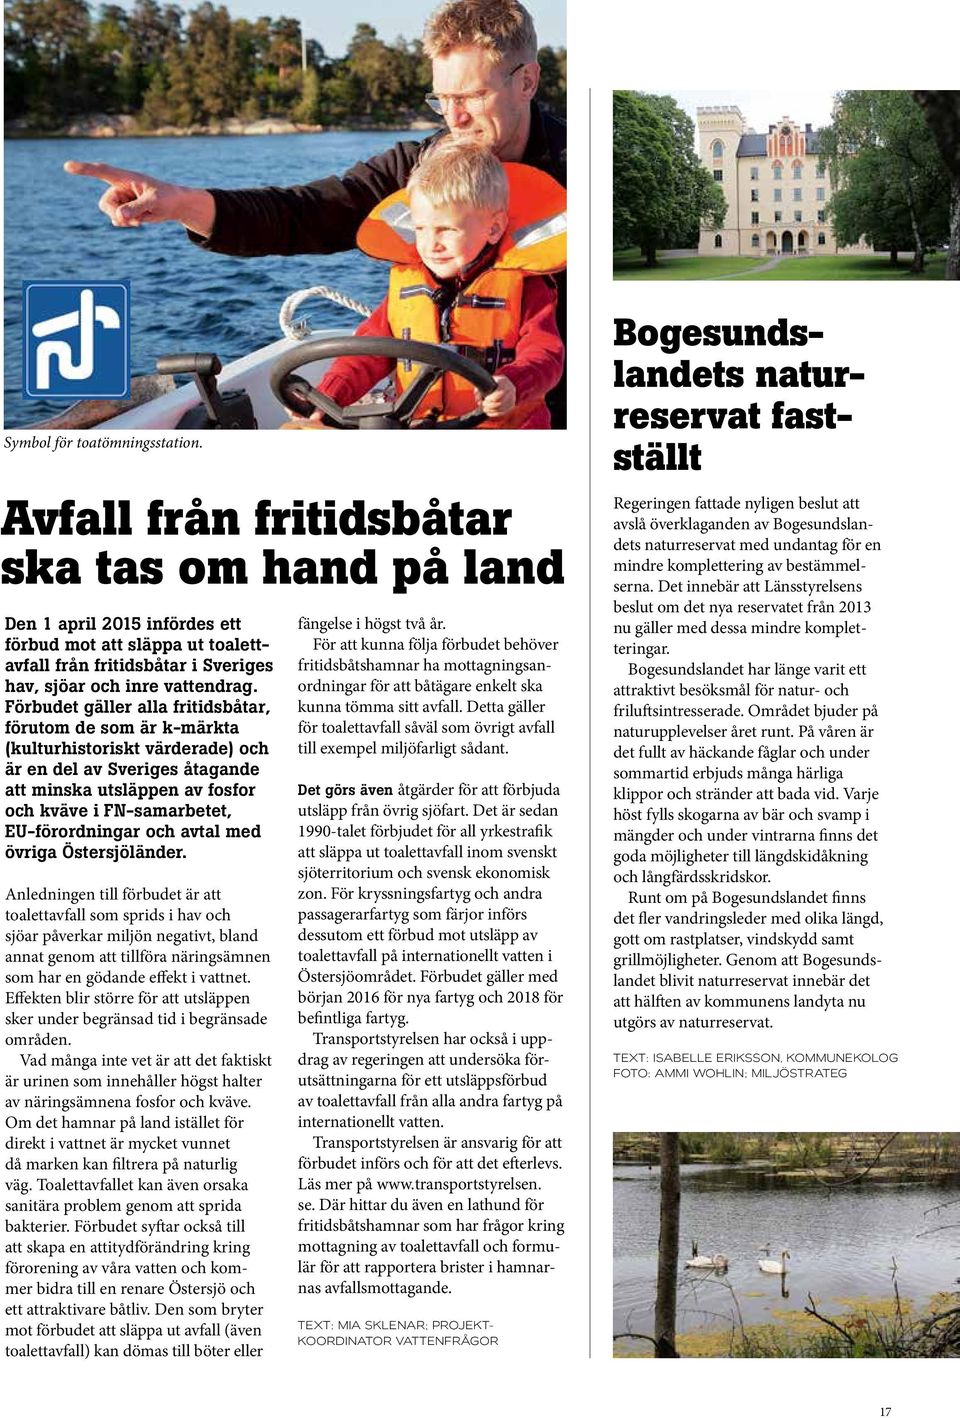 Förbudet gäller alla fritidsbåtar, förutom de som är k-märkta (kulturhistoriskt värderade) och är en del av Sveriges åtagande att minska utsläppen av fosfor och kväve i FN-samarbetet, EU-förordningar